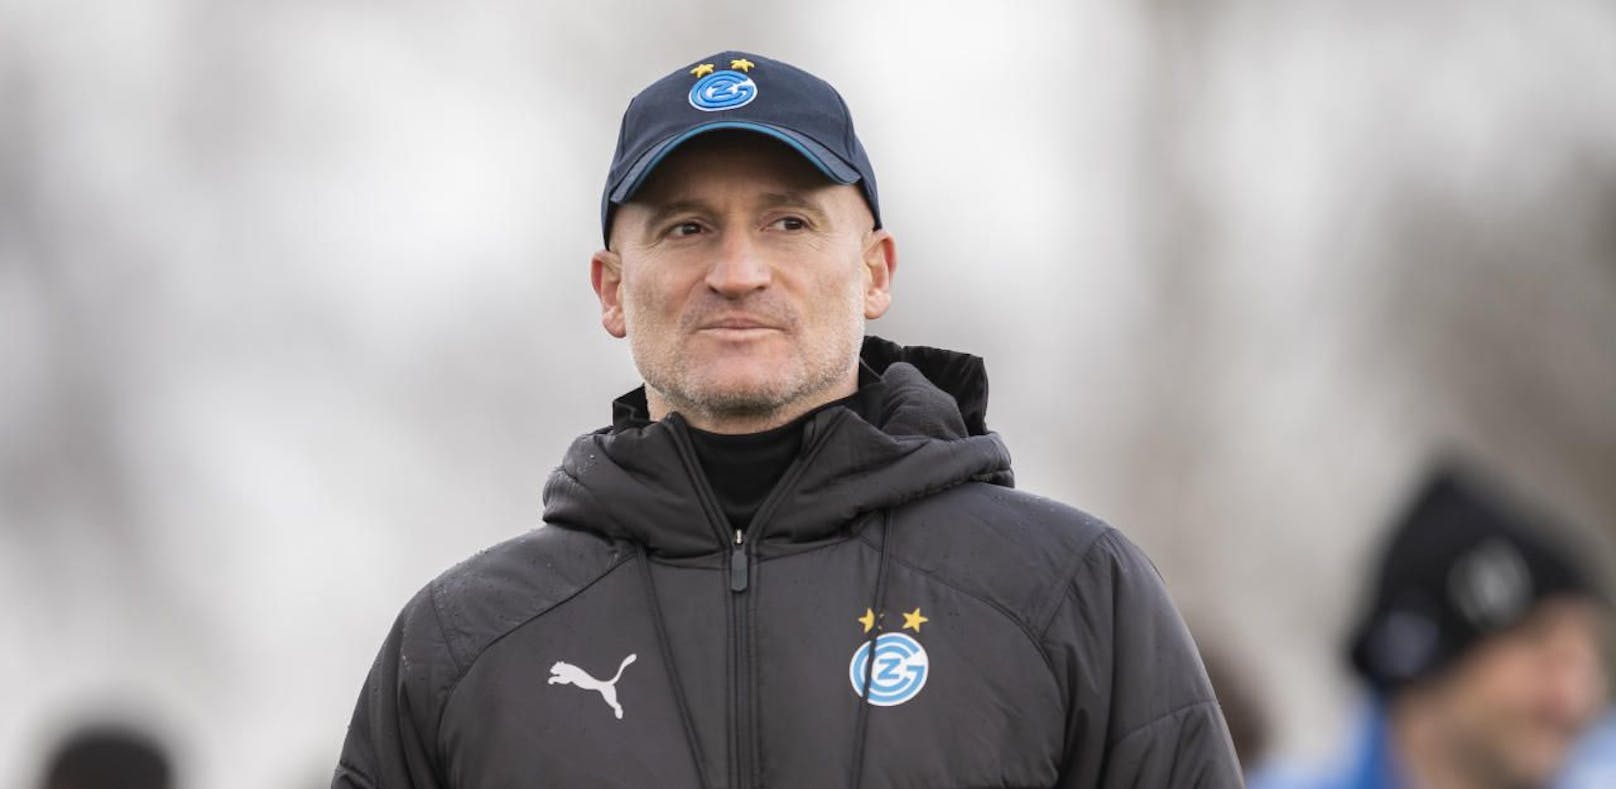 Goran Djuricin ist seit Februar Trainer beim Zweitligisten Grasshoppers Zürich.